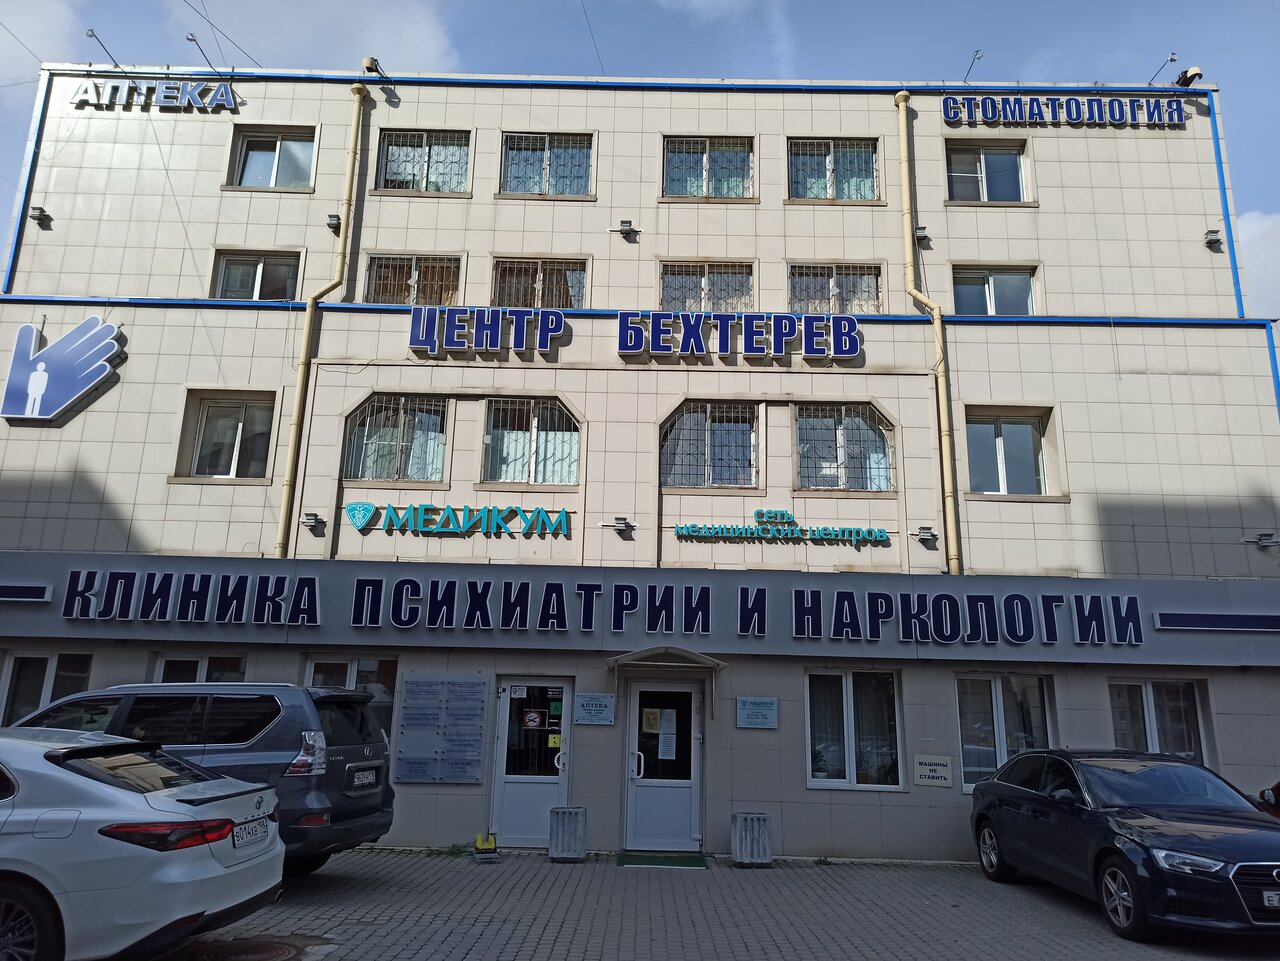 Стоматологическая клиника Медикум, Казань, пр. Королёва, 48 корпус 5